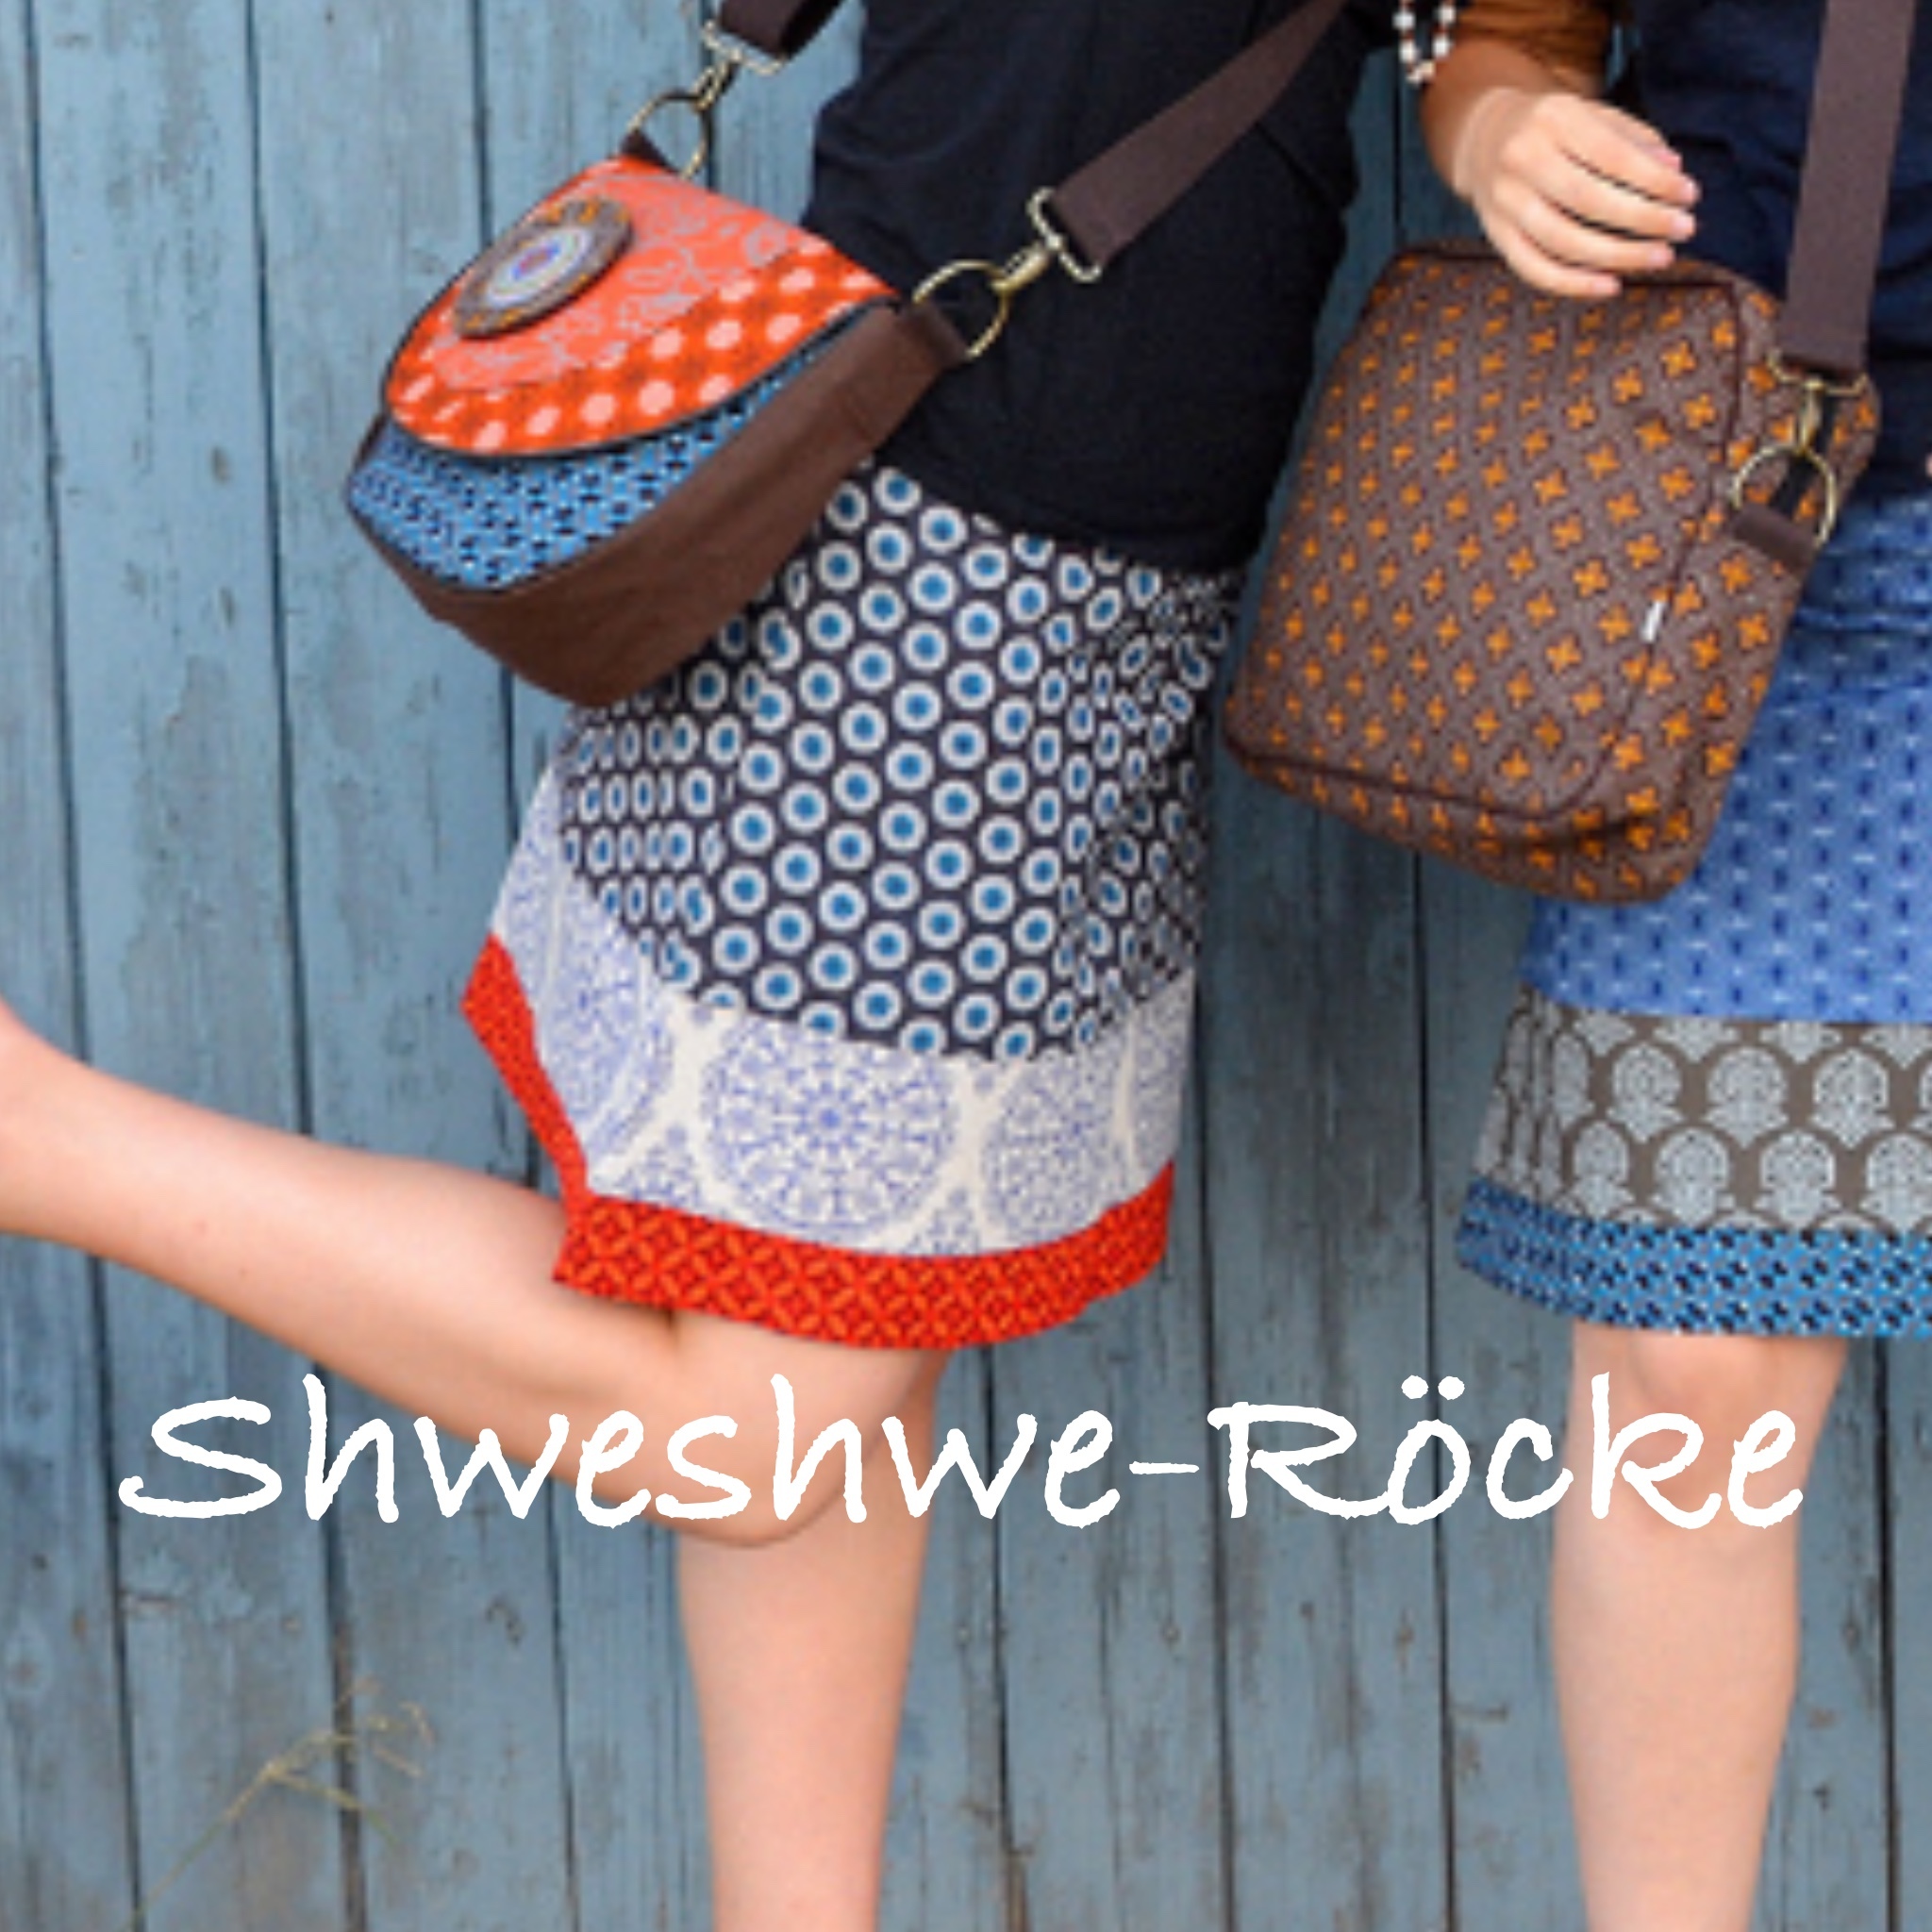 Shweshwe-Rocke